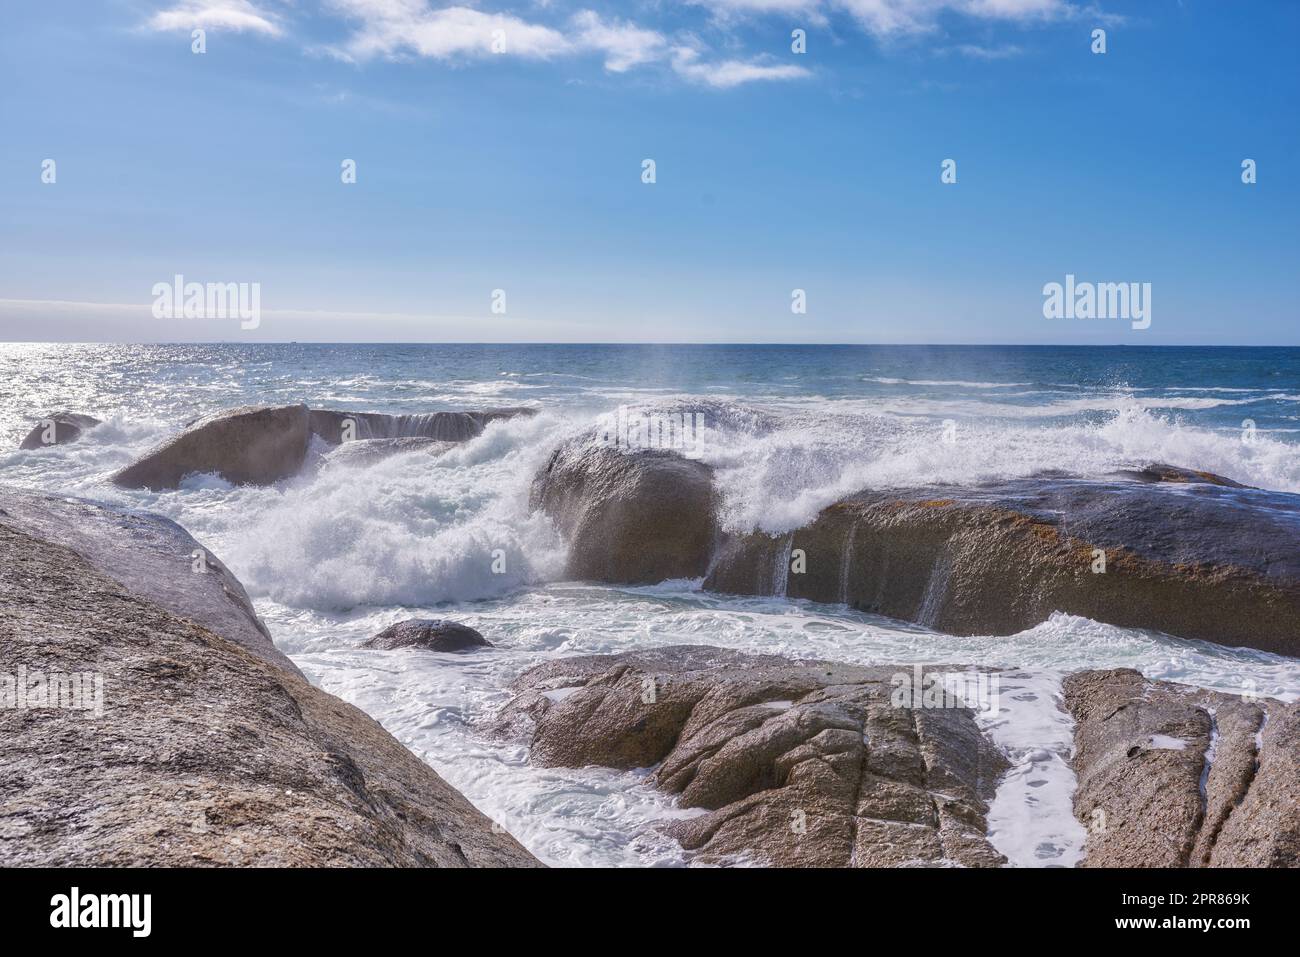 Una costa rocciosa e una vista dell'oceano con le onde, lo spazio blu del cielo e un orizzonte sullo sfondo a Camps Bay, città del Capo, Sudafrica. Spiaggia tranquilla, tranquilla e con paesaggi naturali Foto Stock